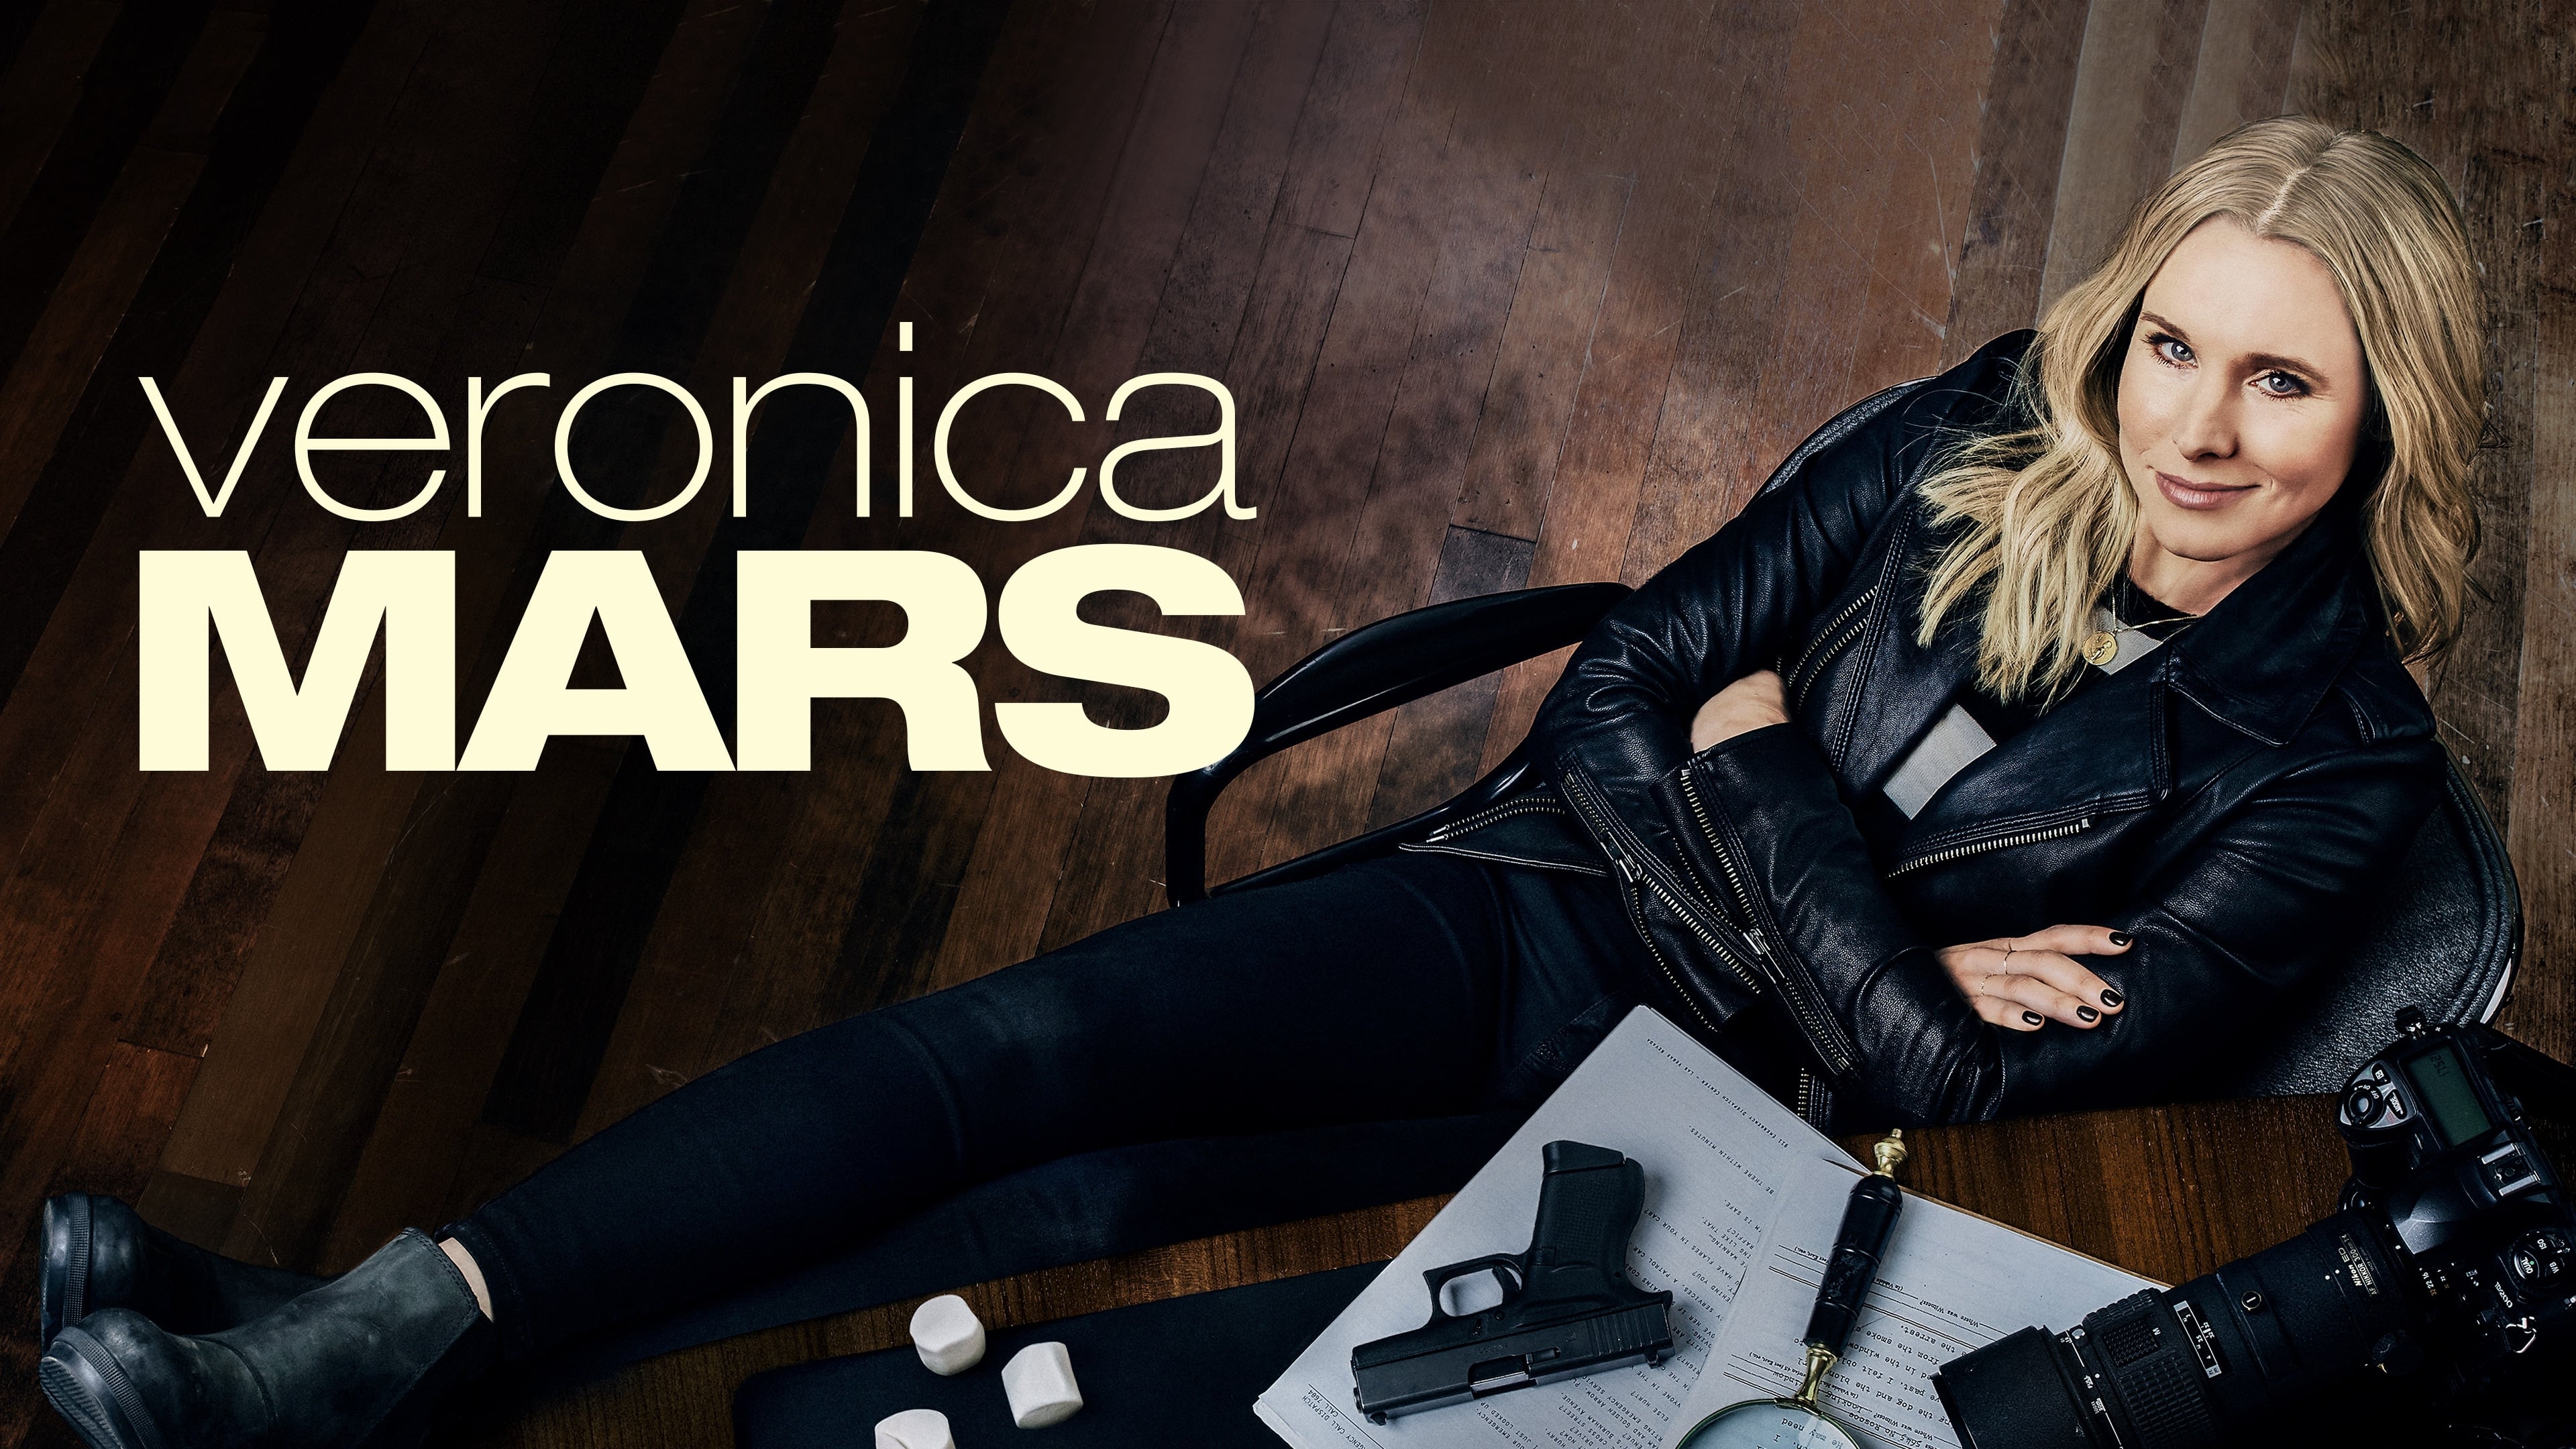 Veronica Mars - Season 4